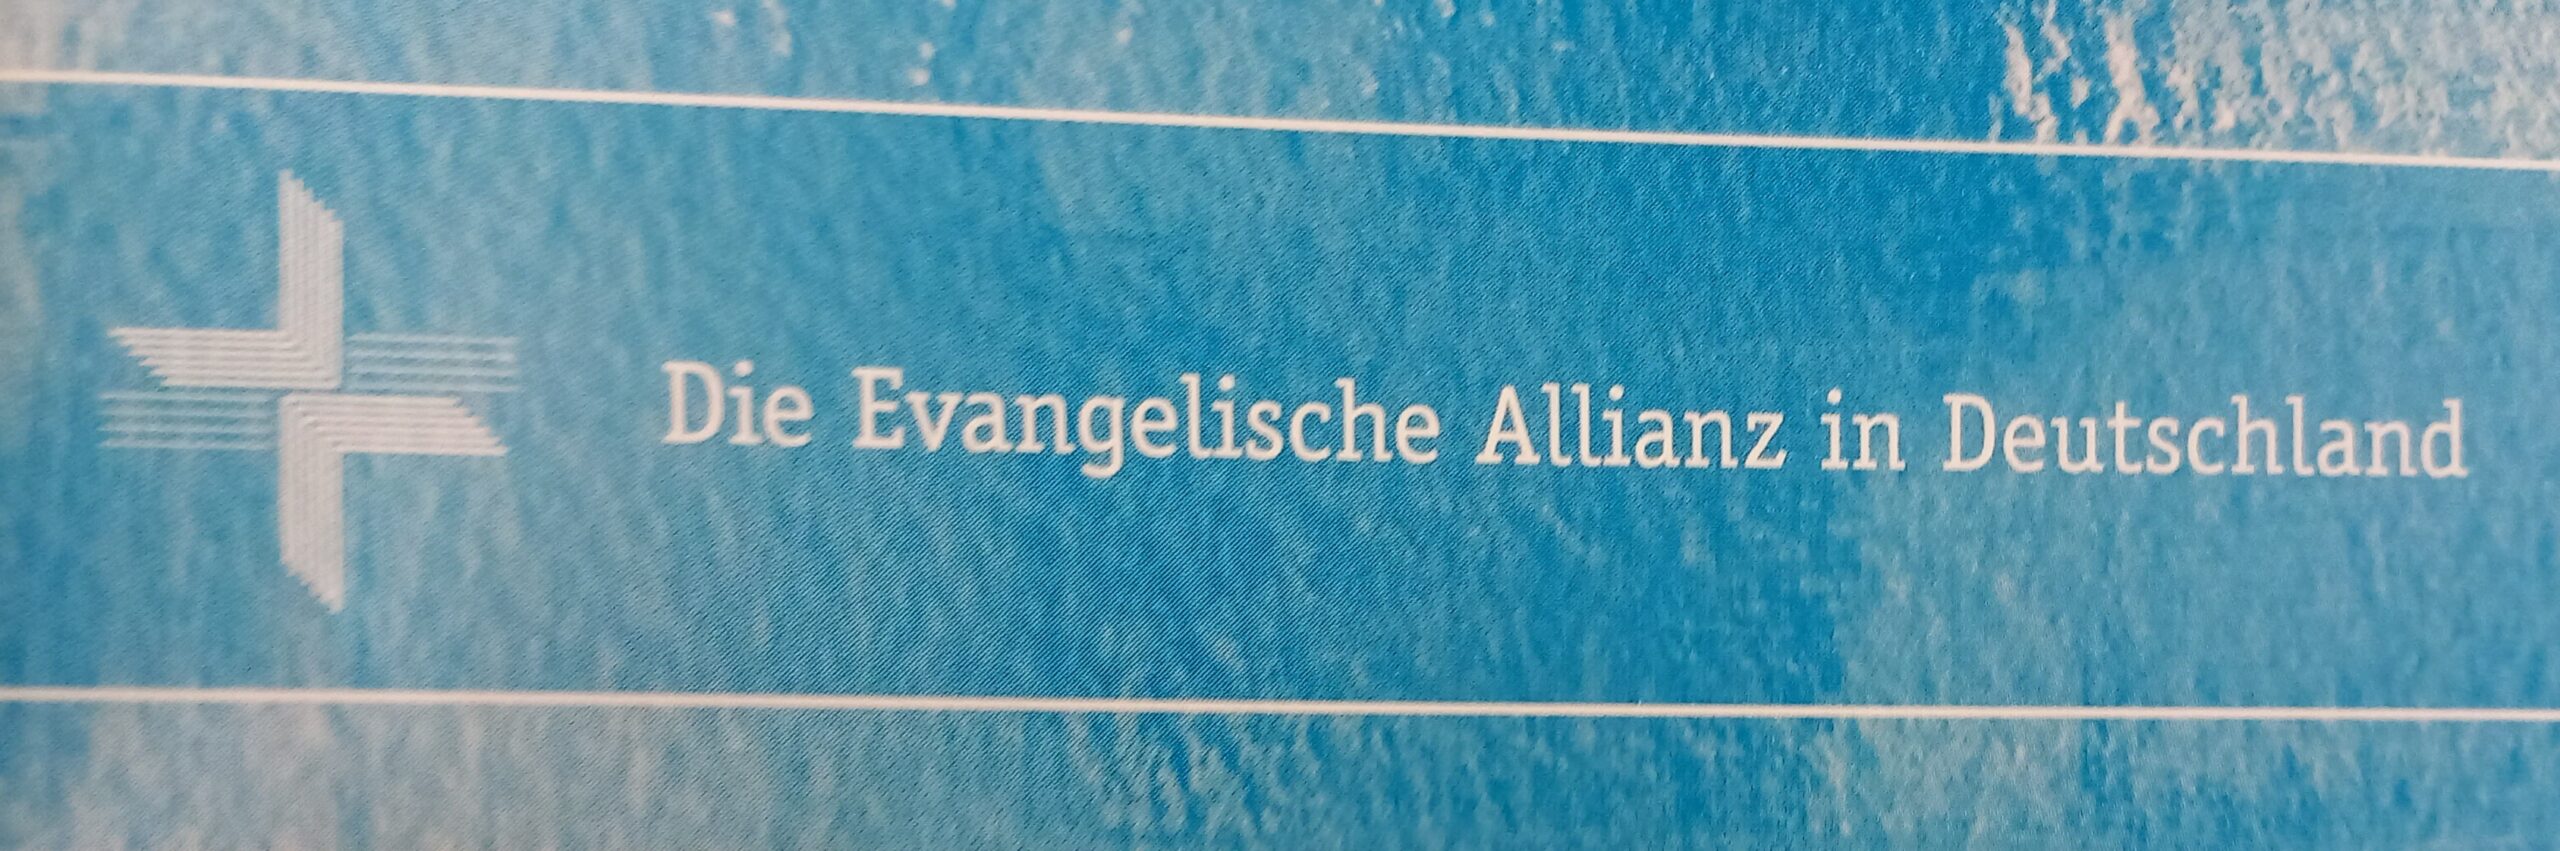 Allianz -Abschlußgottesdienst